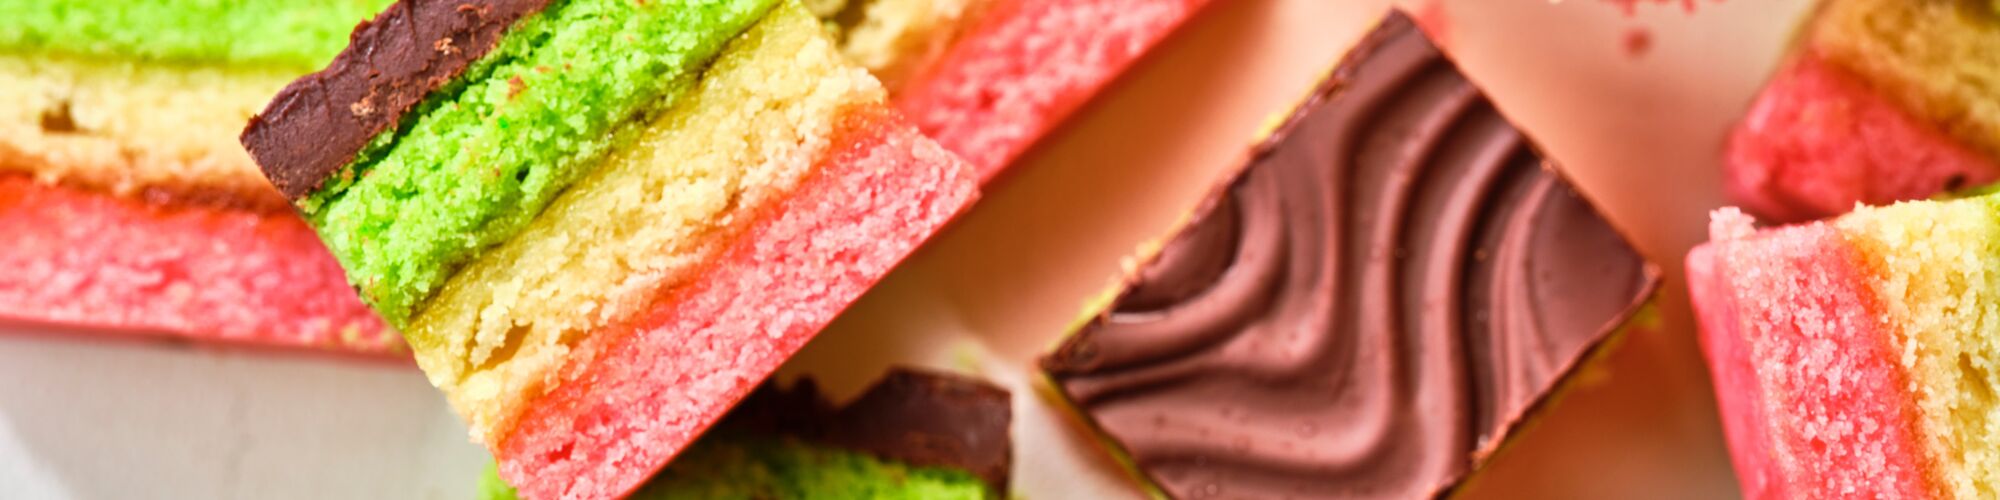 Classic Italian Rainbow – The Original CakeBites